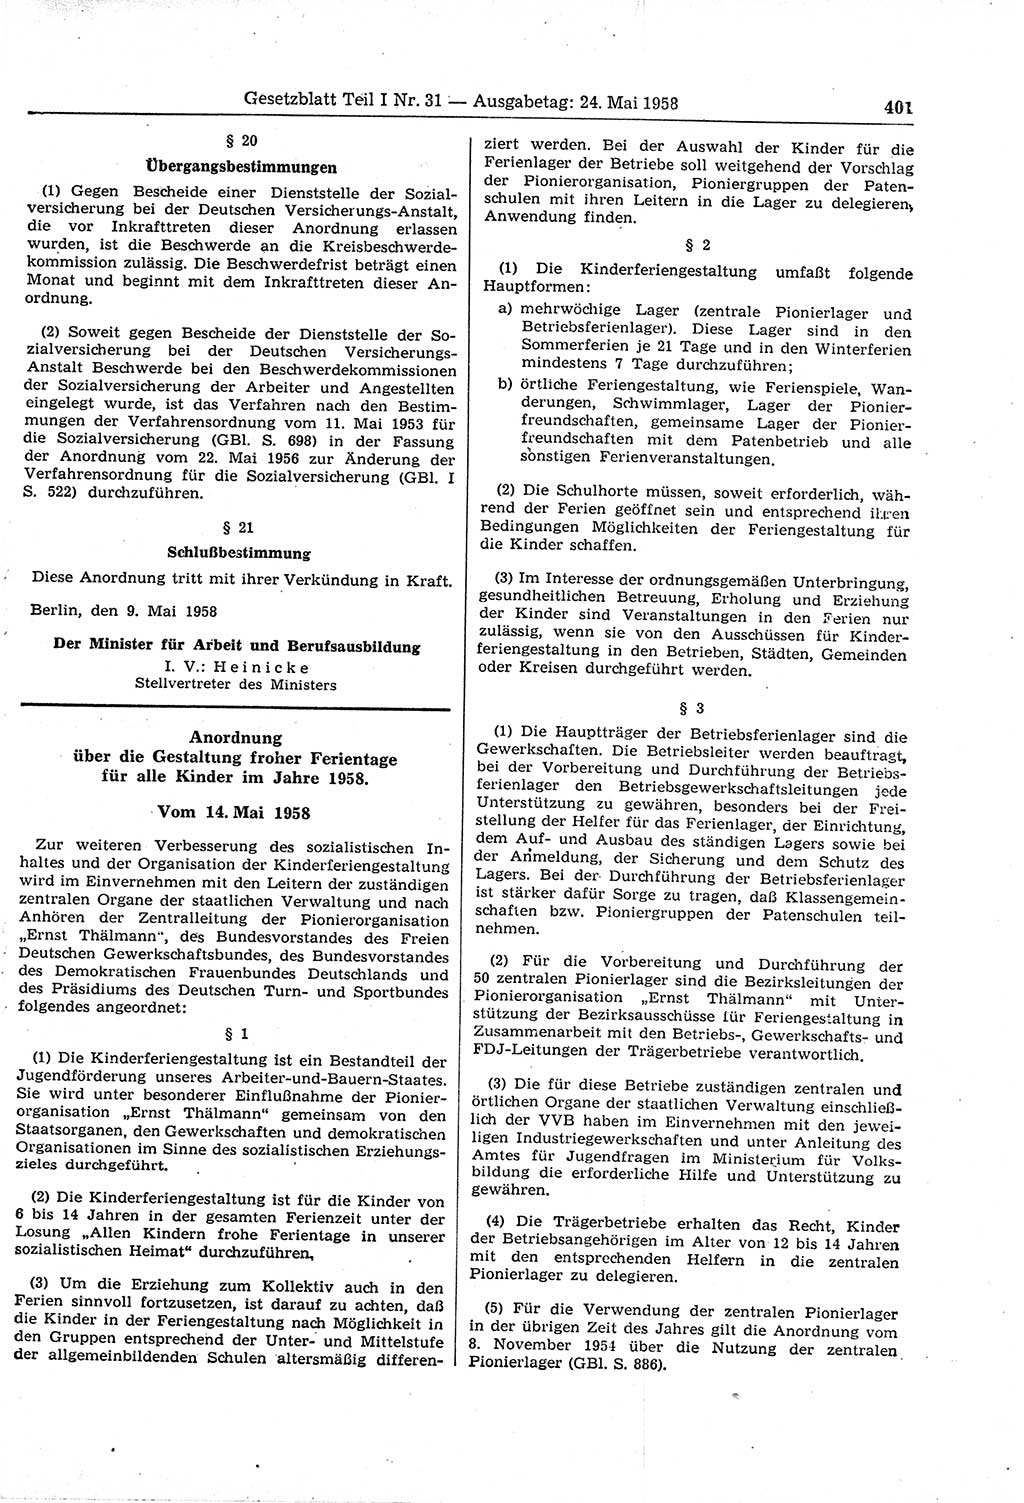 Gesetzblatt (GBl.) der Deutschen Demokratischen Republik (DDR) Teil Ⅰ 1958, Seite 401 (GBl. DDR Ⅰ 1958, S. 401)